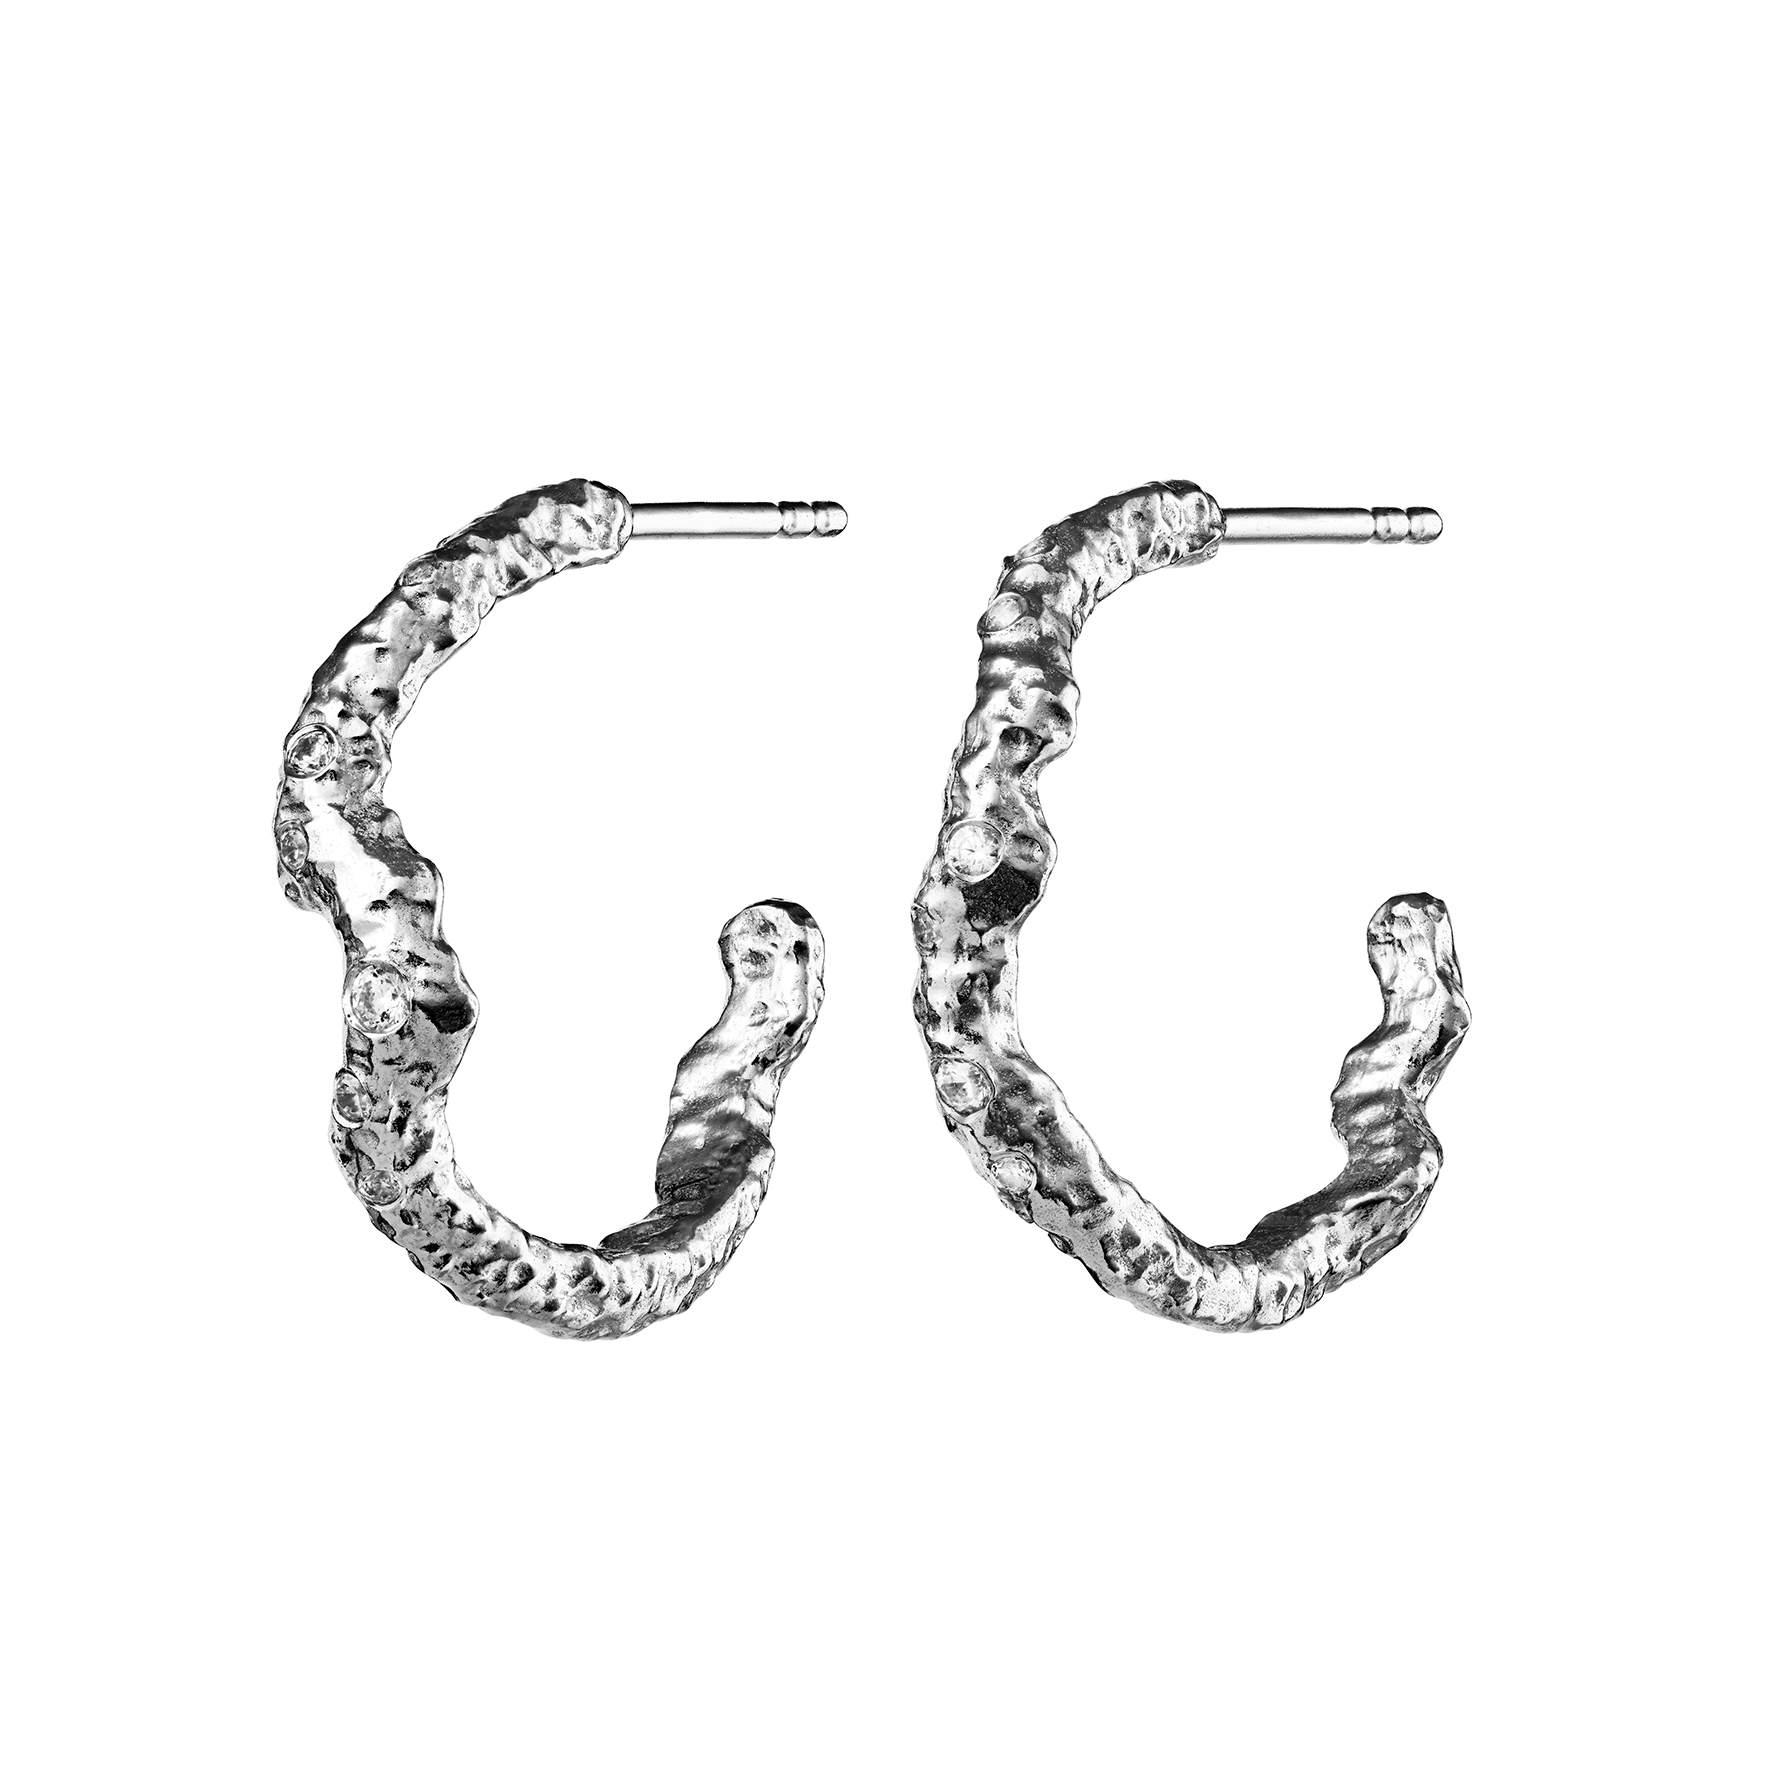 Janine Grande Earrings fra Maanesten i Sølv Sterling 925